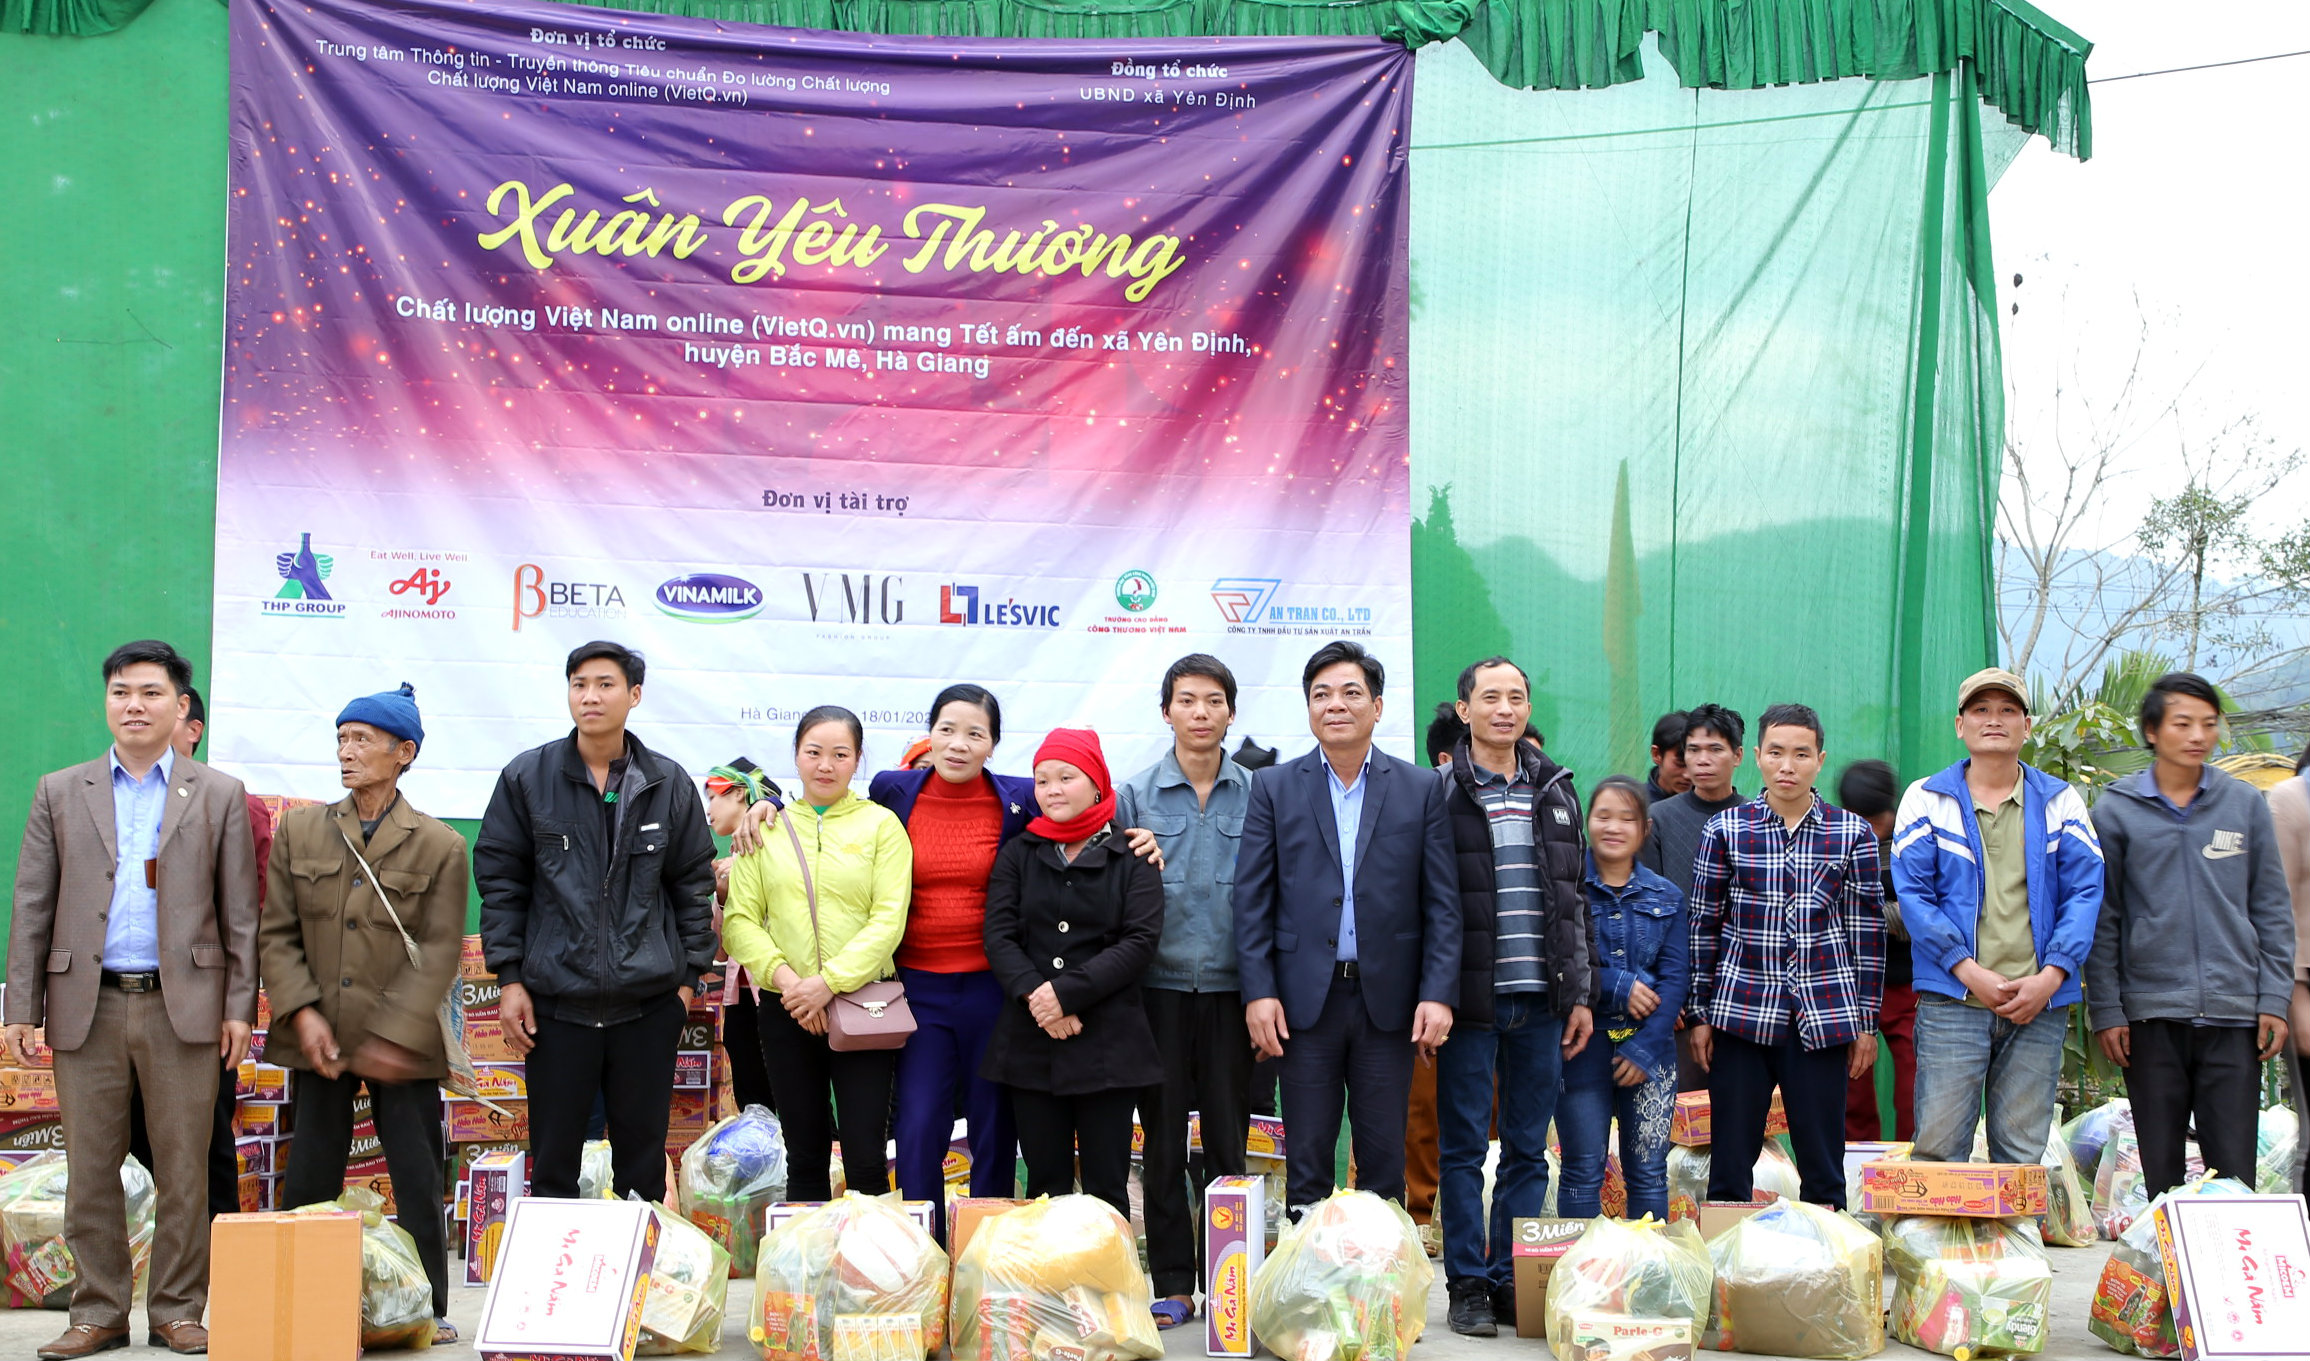 Chất lượng Việt Nam Online phát động chương trình 'Tết ấm cho người nghèo' huyện Võ Nhai, Thái Nguyên